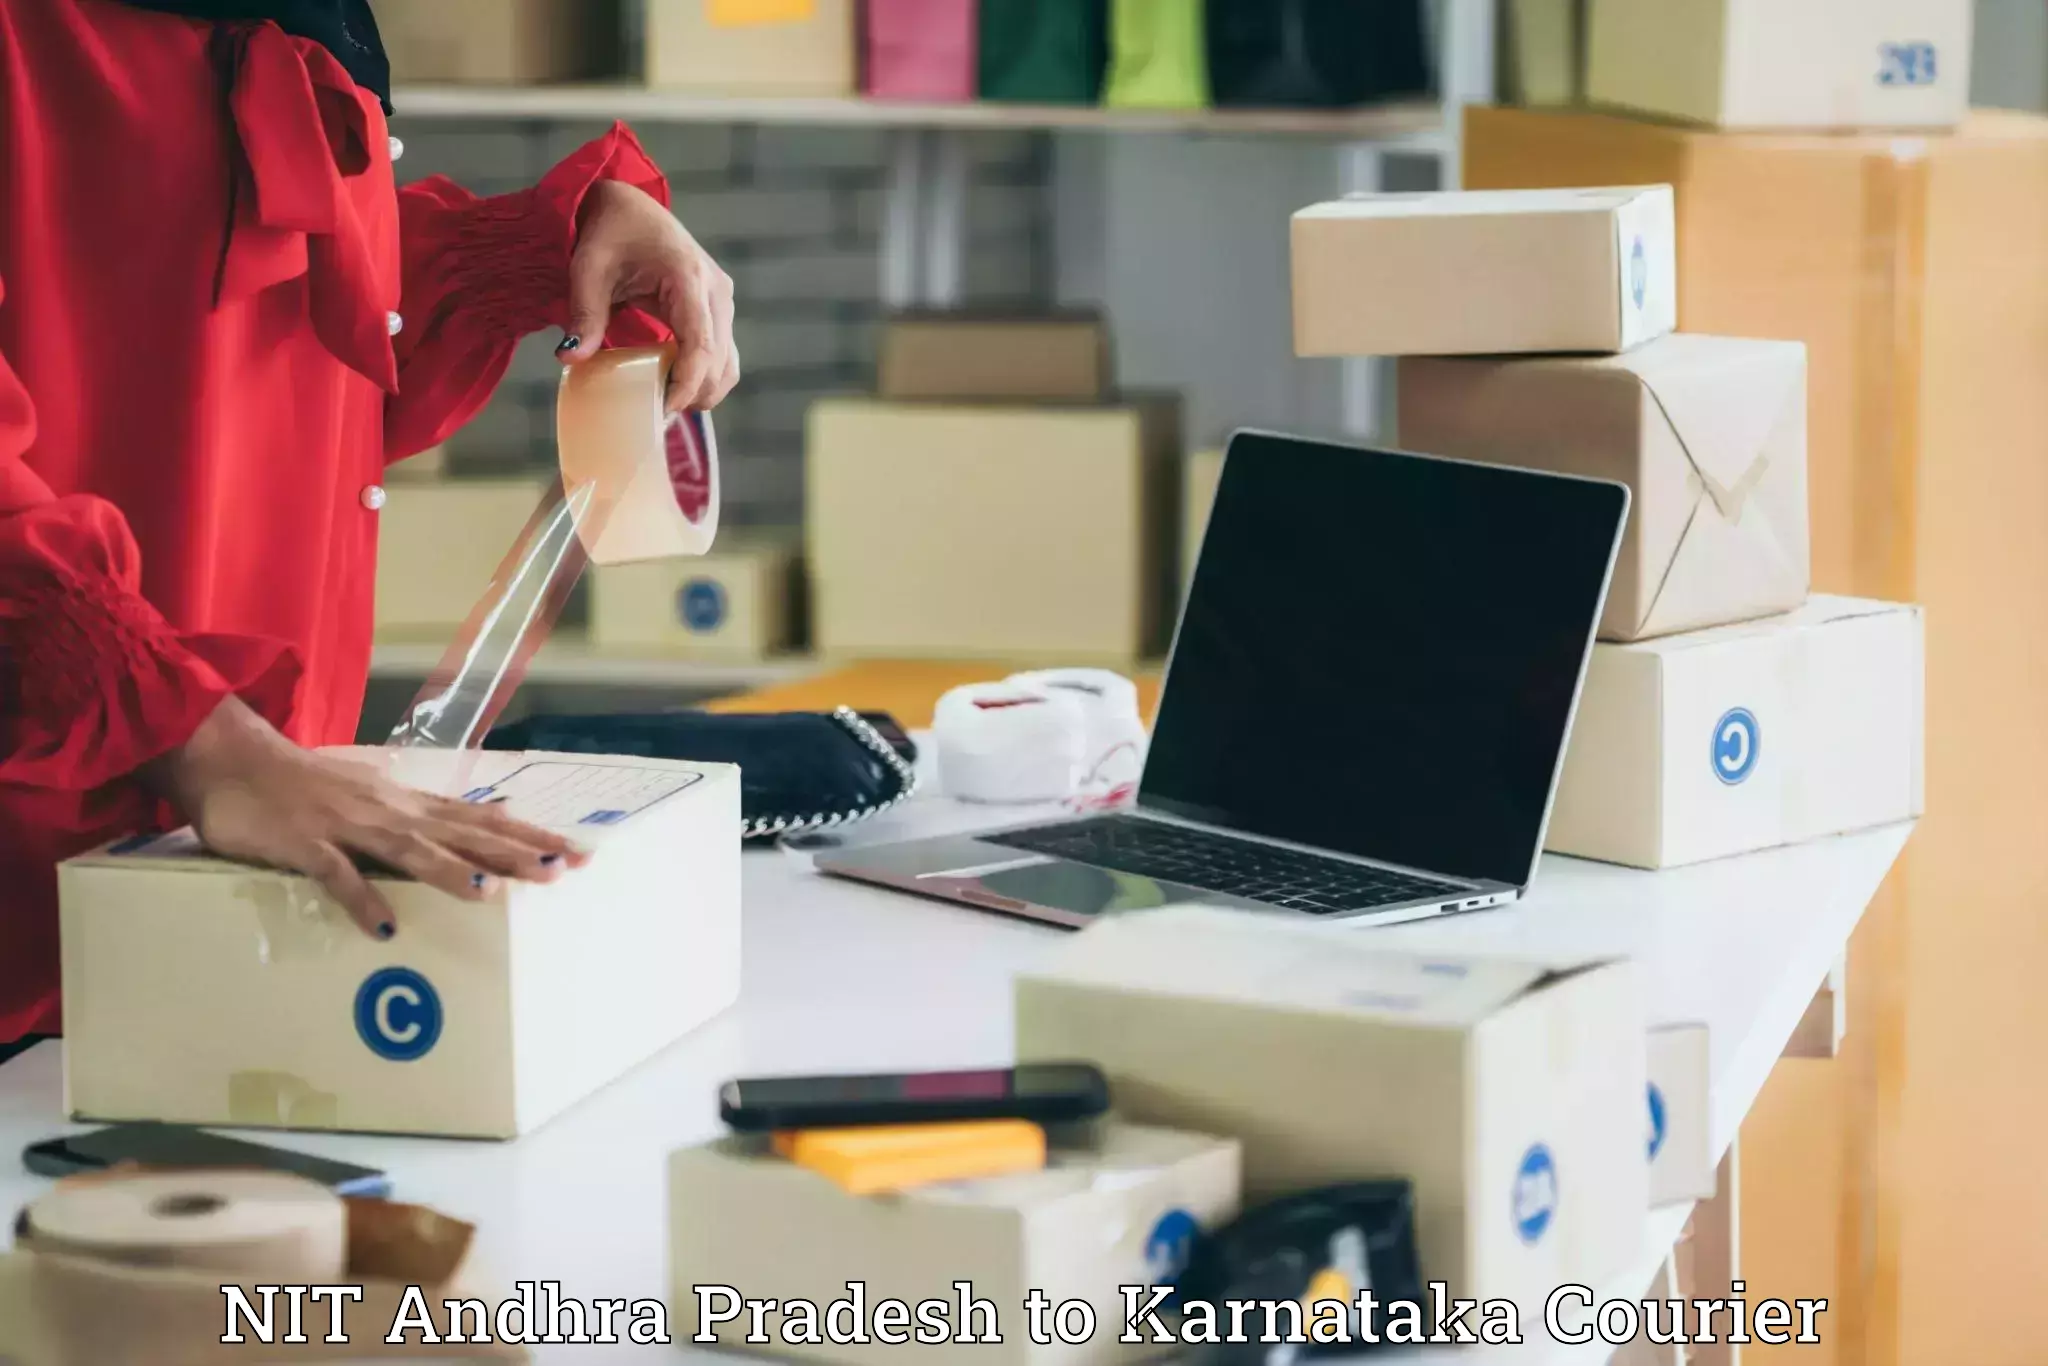 Large package courier NIT Andhra Pradesh to Kanjarakatte